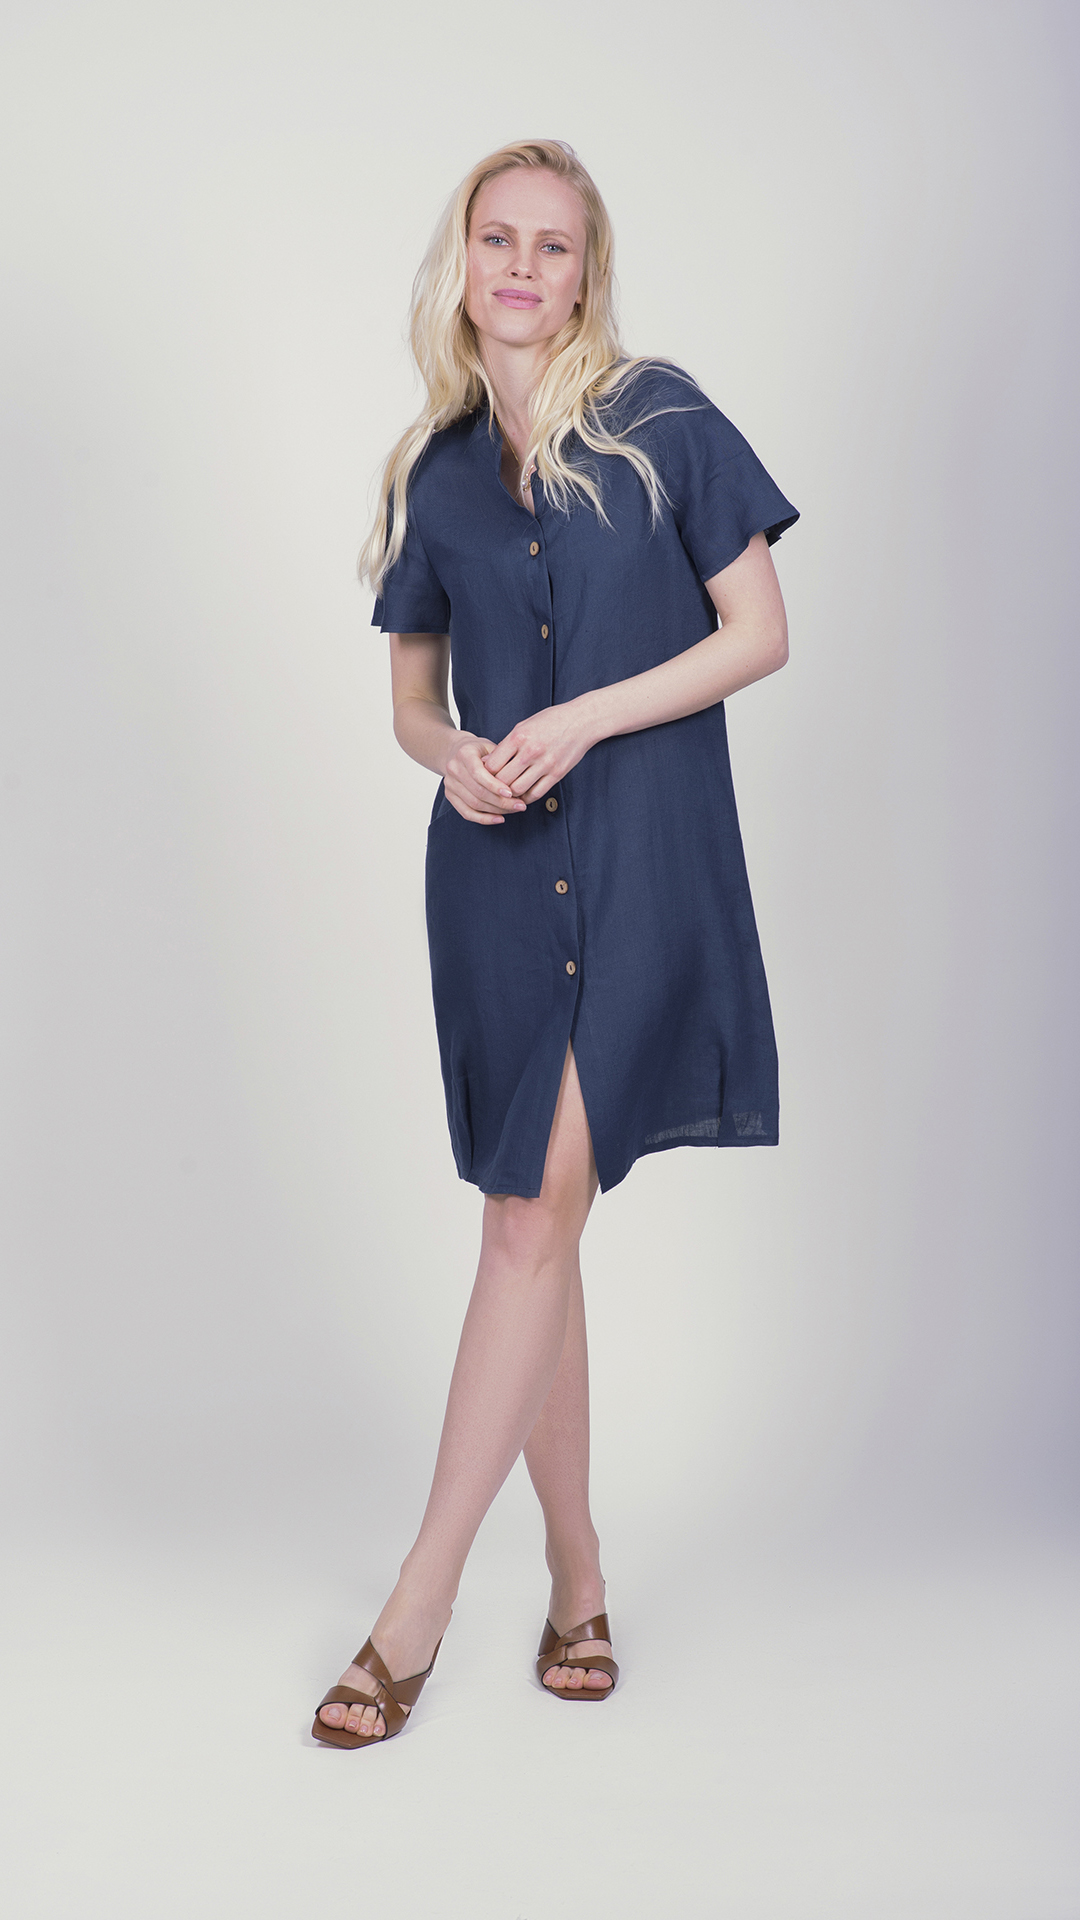 MIC 0542 1stAmerican vestito da donna manica corta con bottoni 100% lino Made in Italy - abito con collo alla coreana e tasca a destra - puro lino